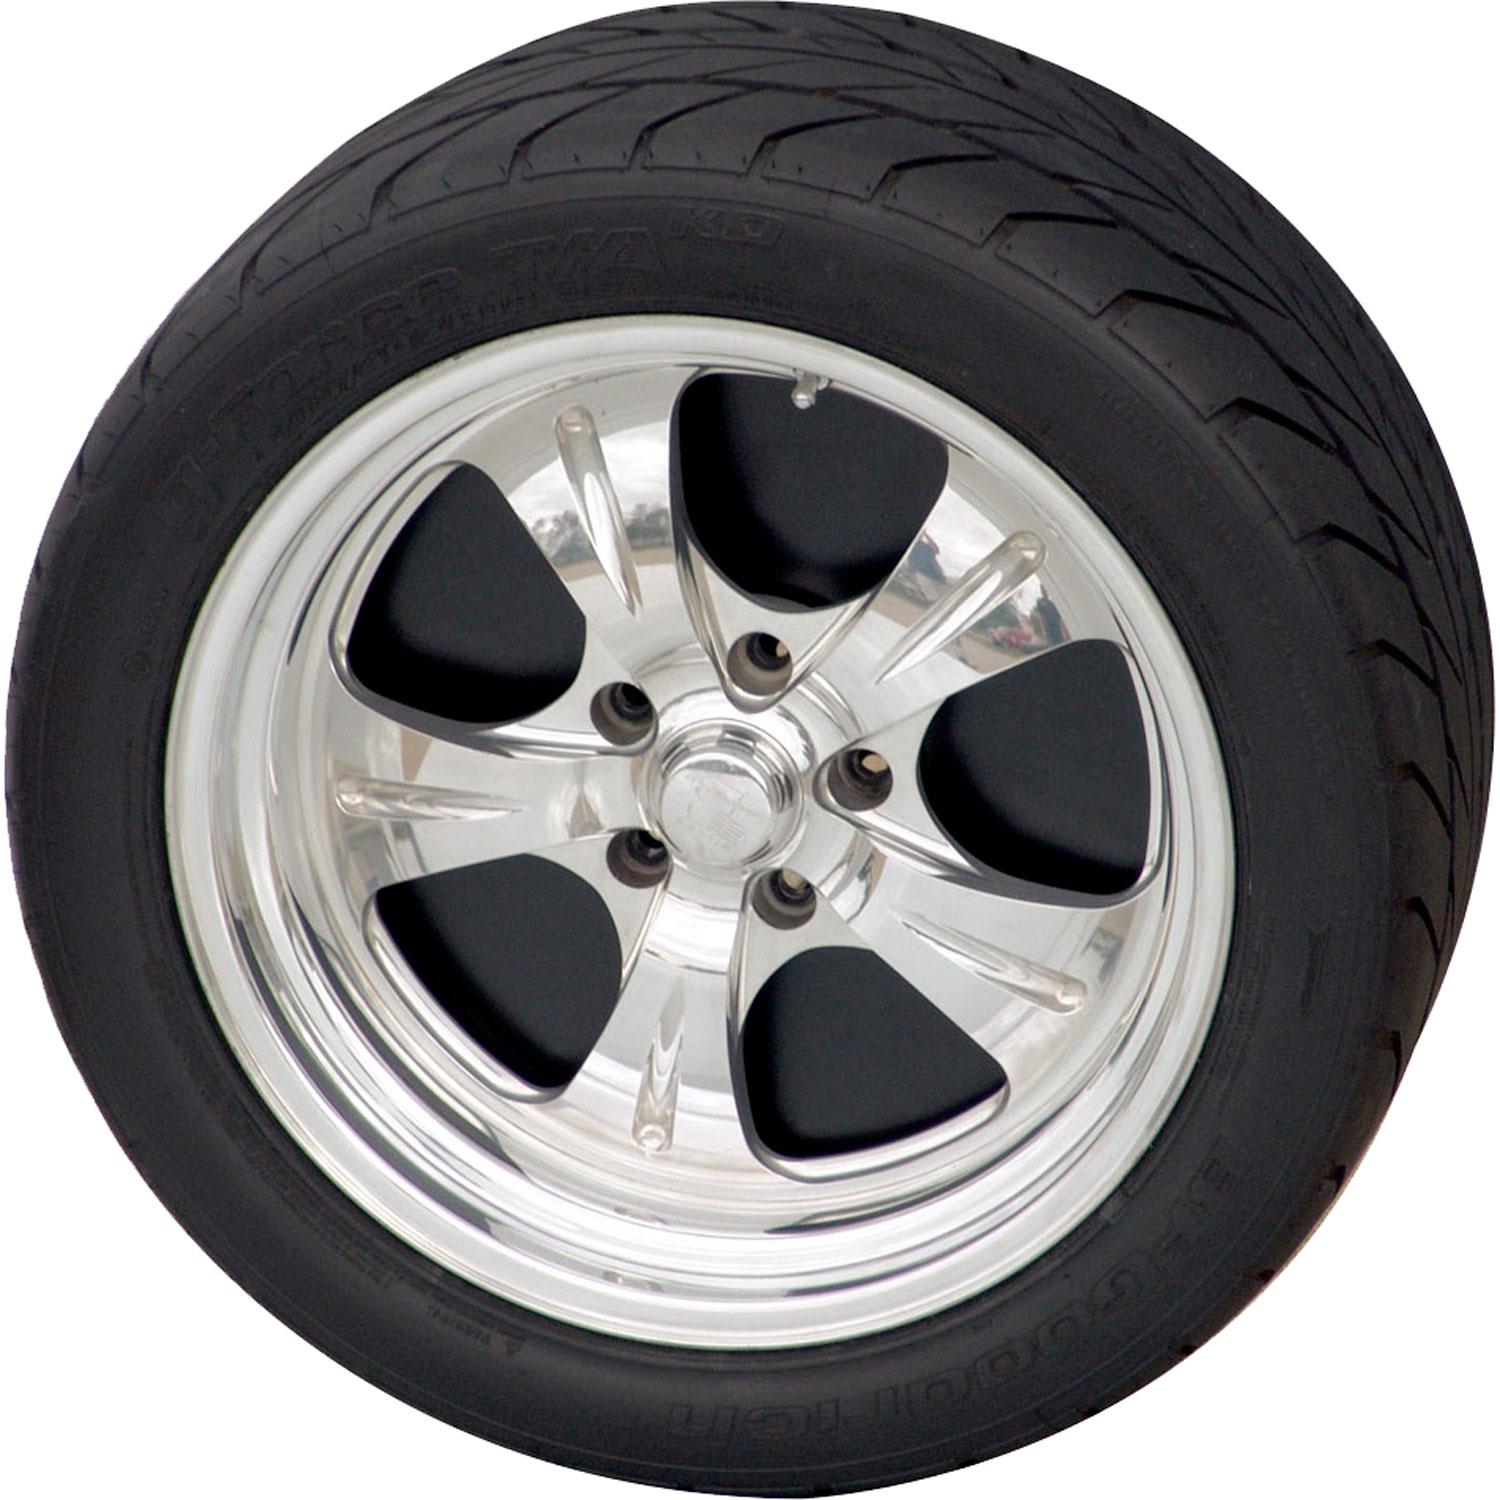 15 inch diameter wheels Mr Gasket 6905 Wheel Dust Shields 